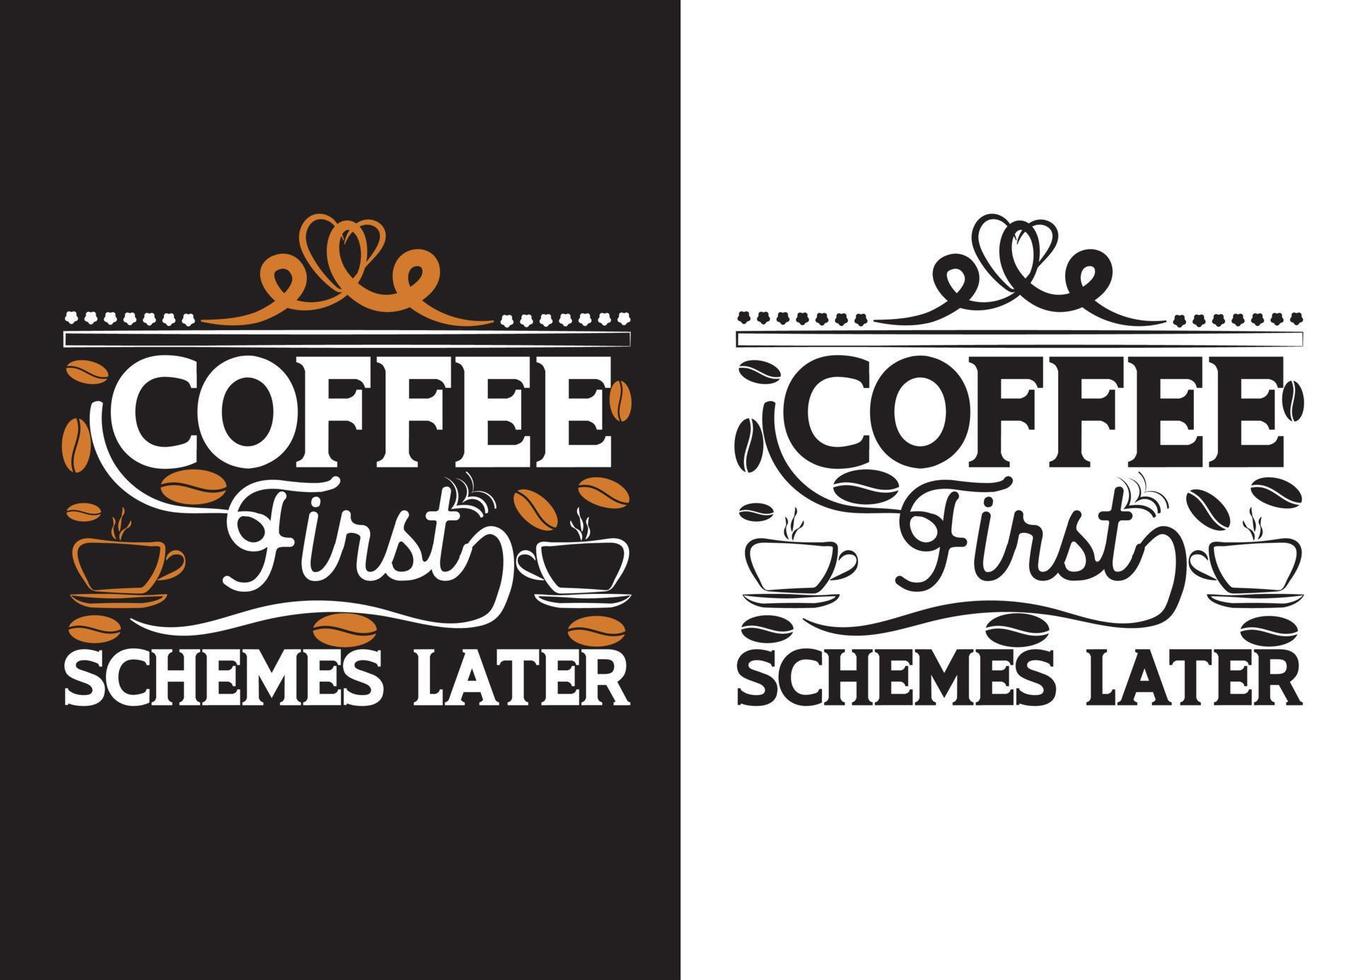 kaffee zuerst schemata später typografie t-shirt design. vektor